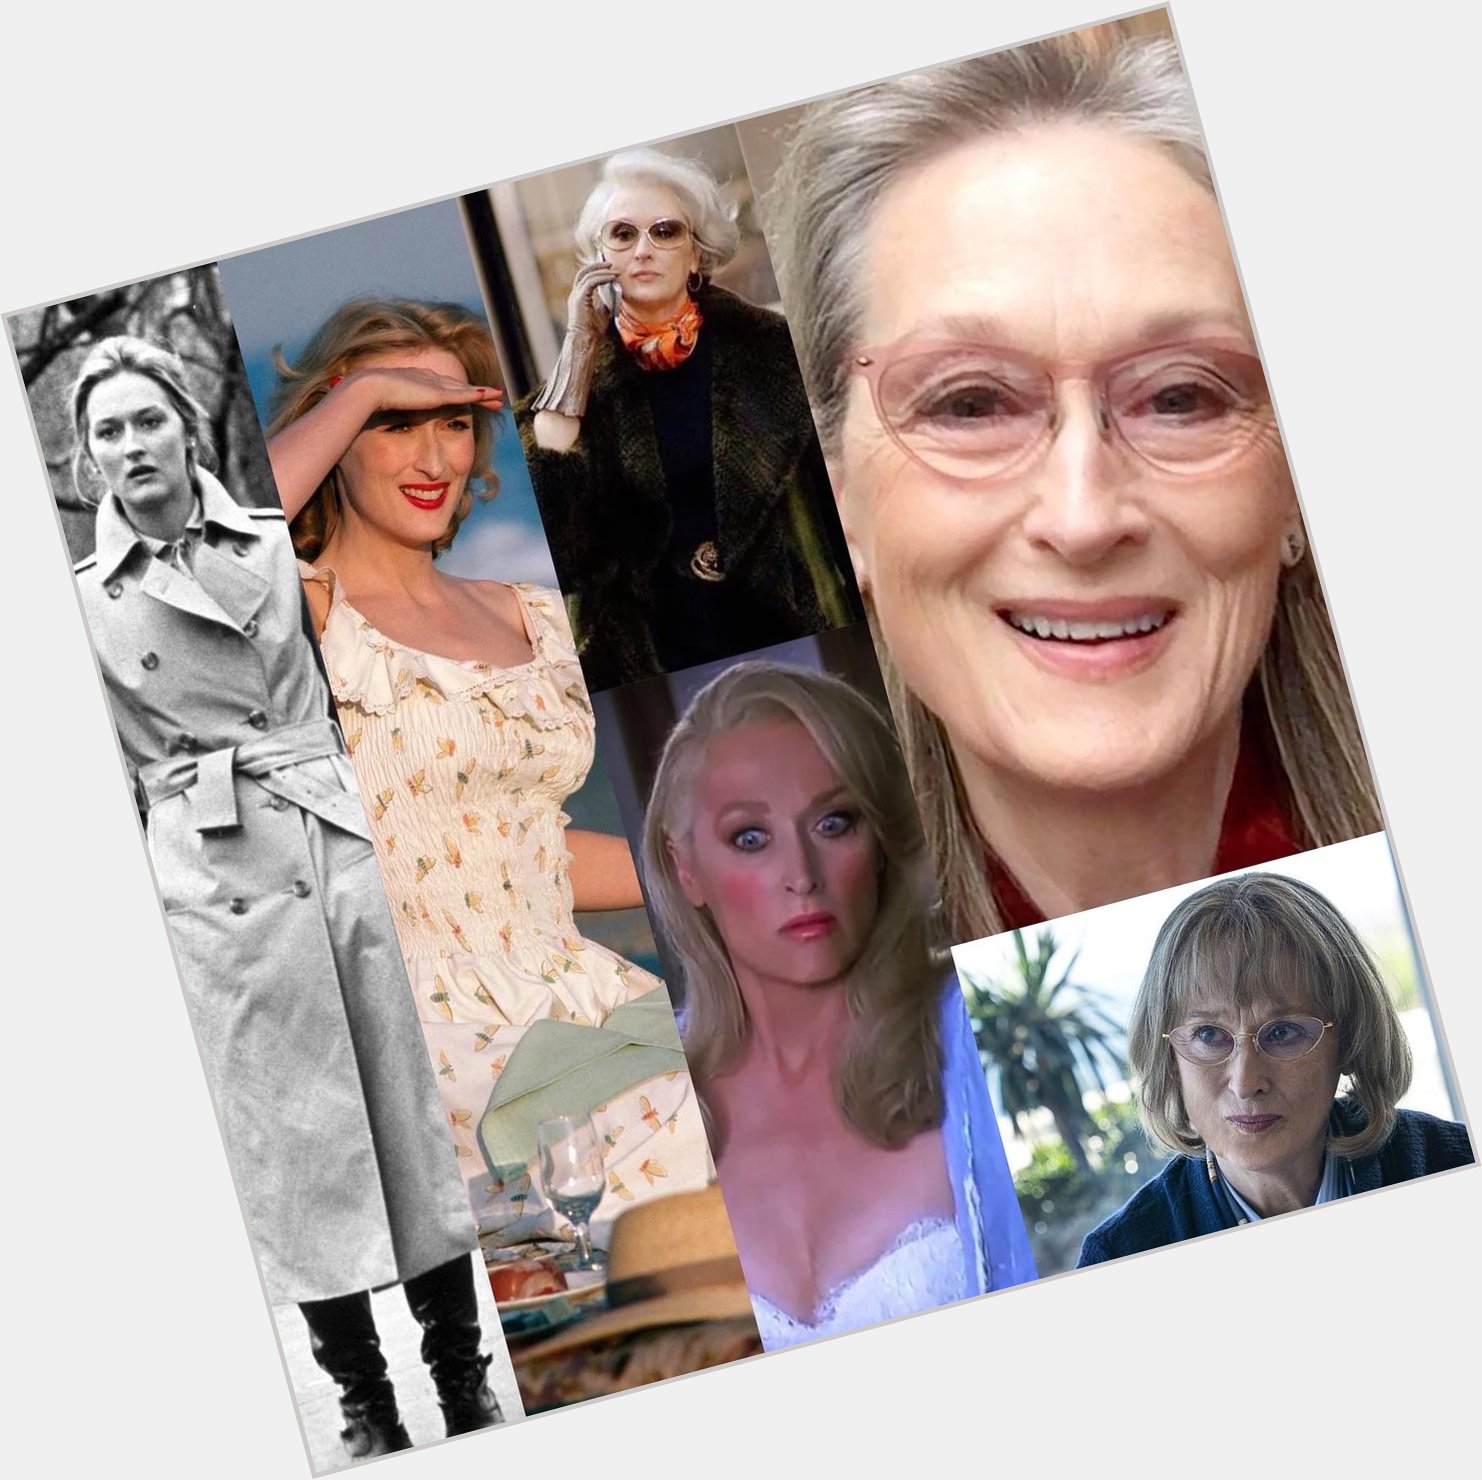 Happy Meryl Streep s birthday!  